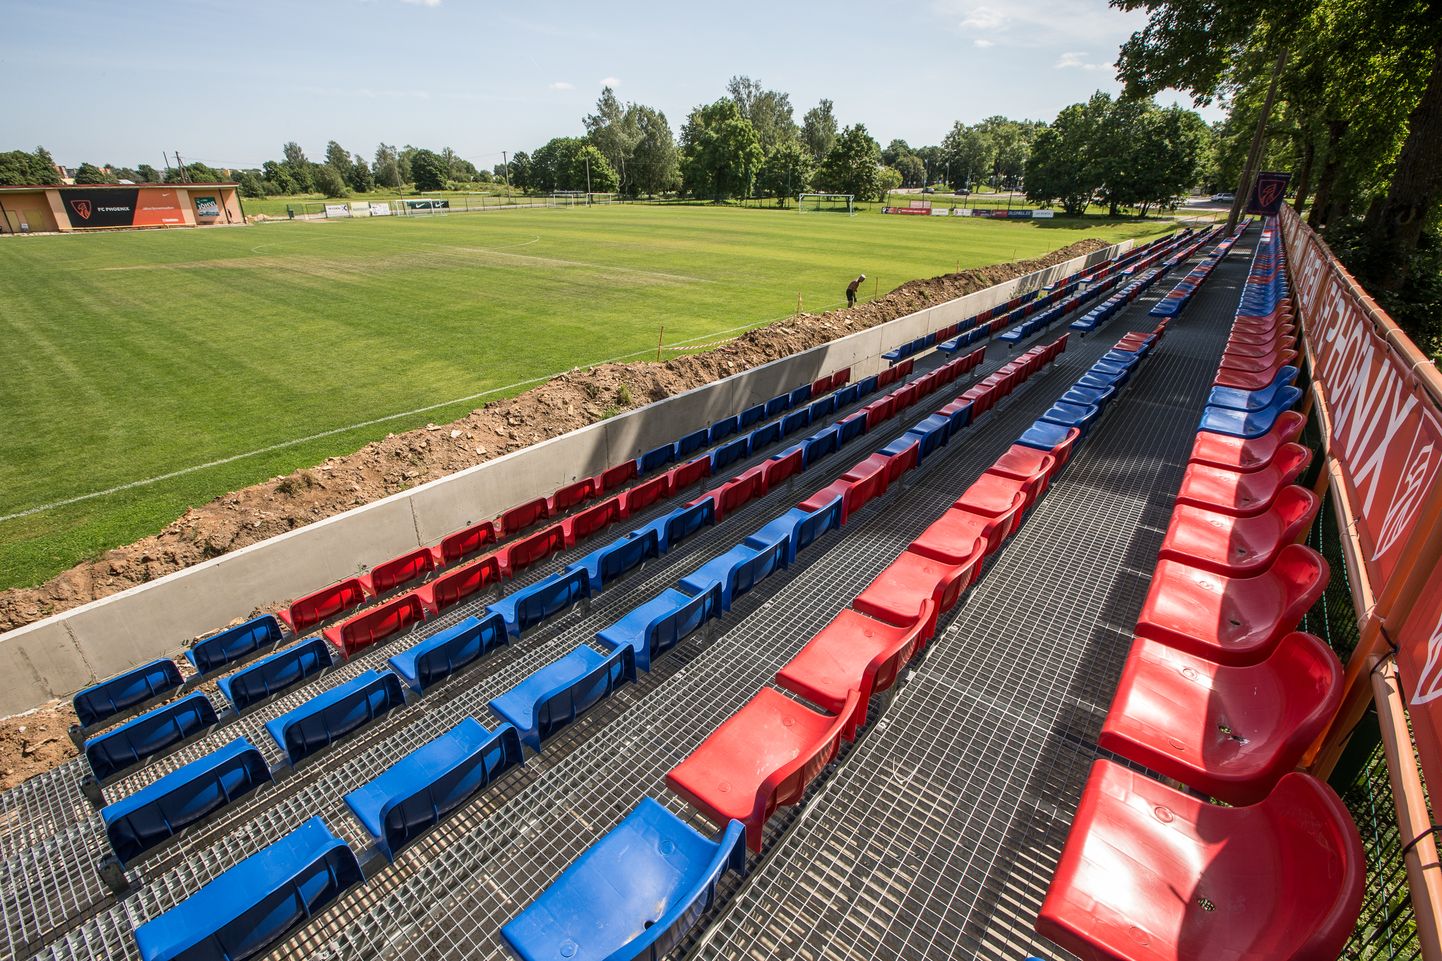 Футбольный холл в Йыхви должен появиться рядом с железнодорожным полотном, по соседству с футбольным полем.